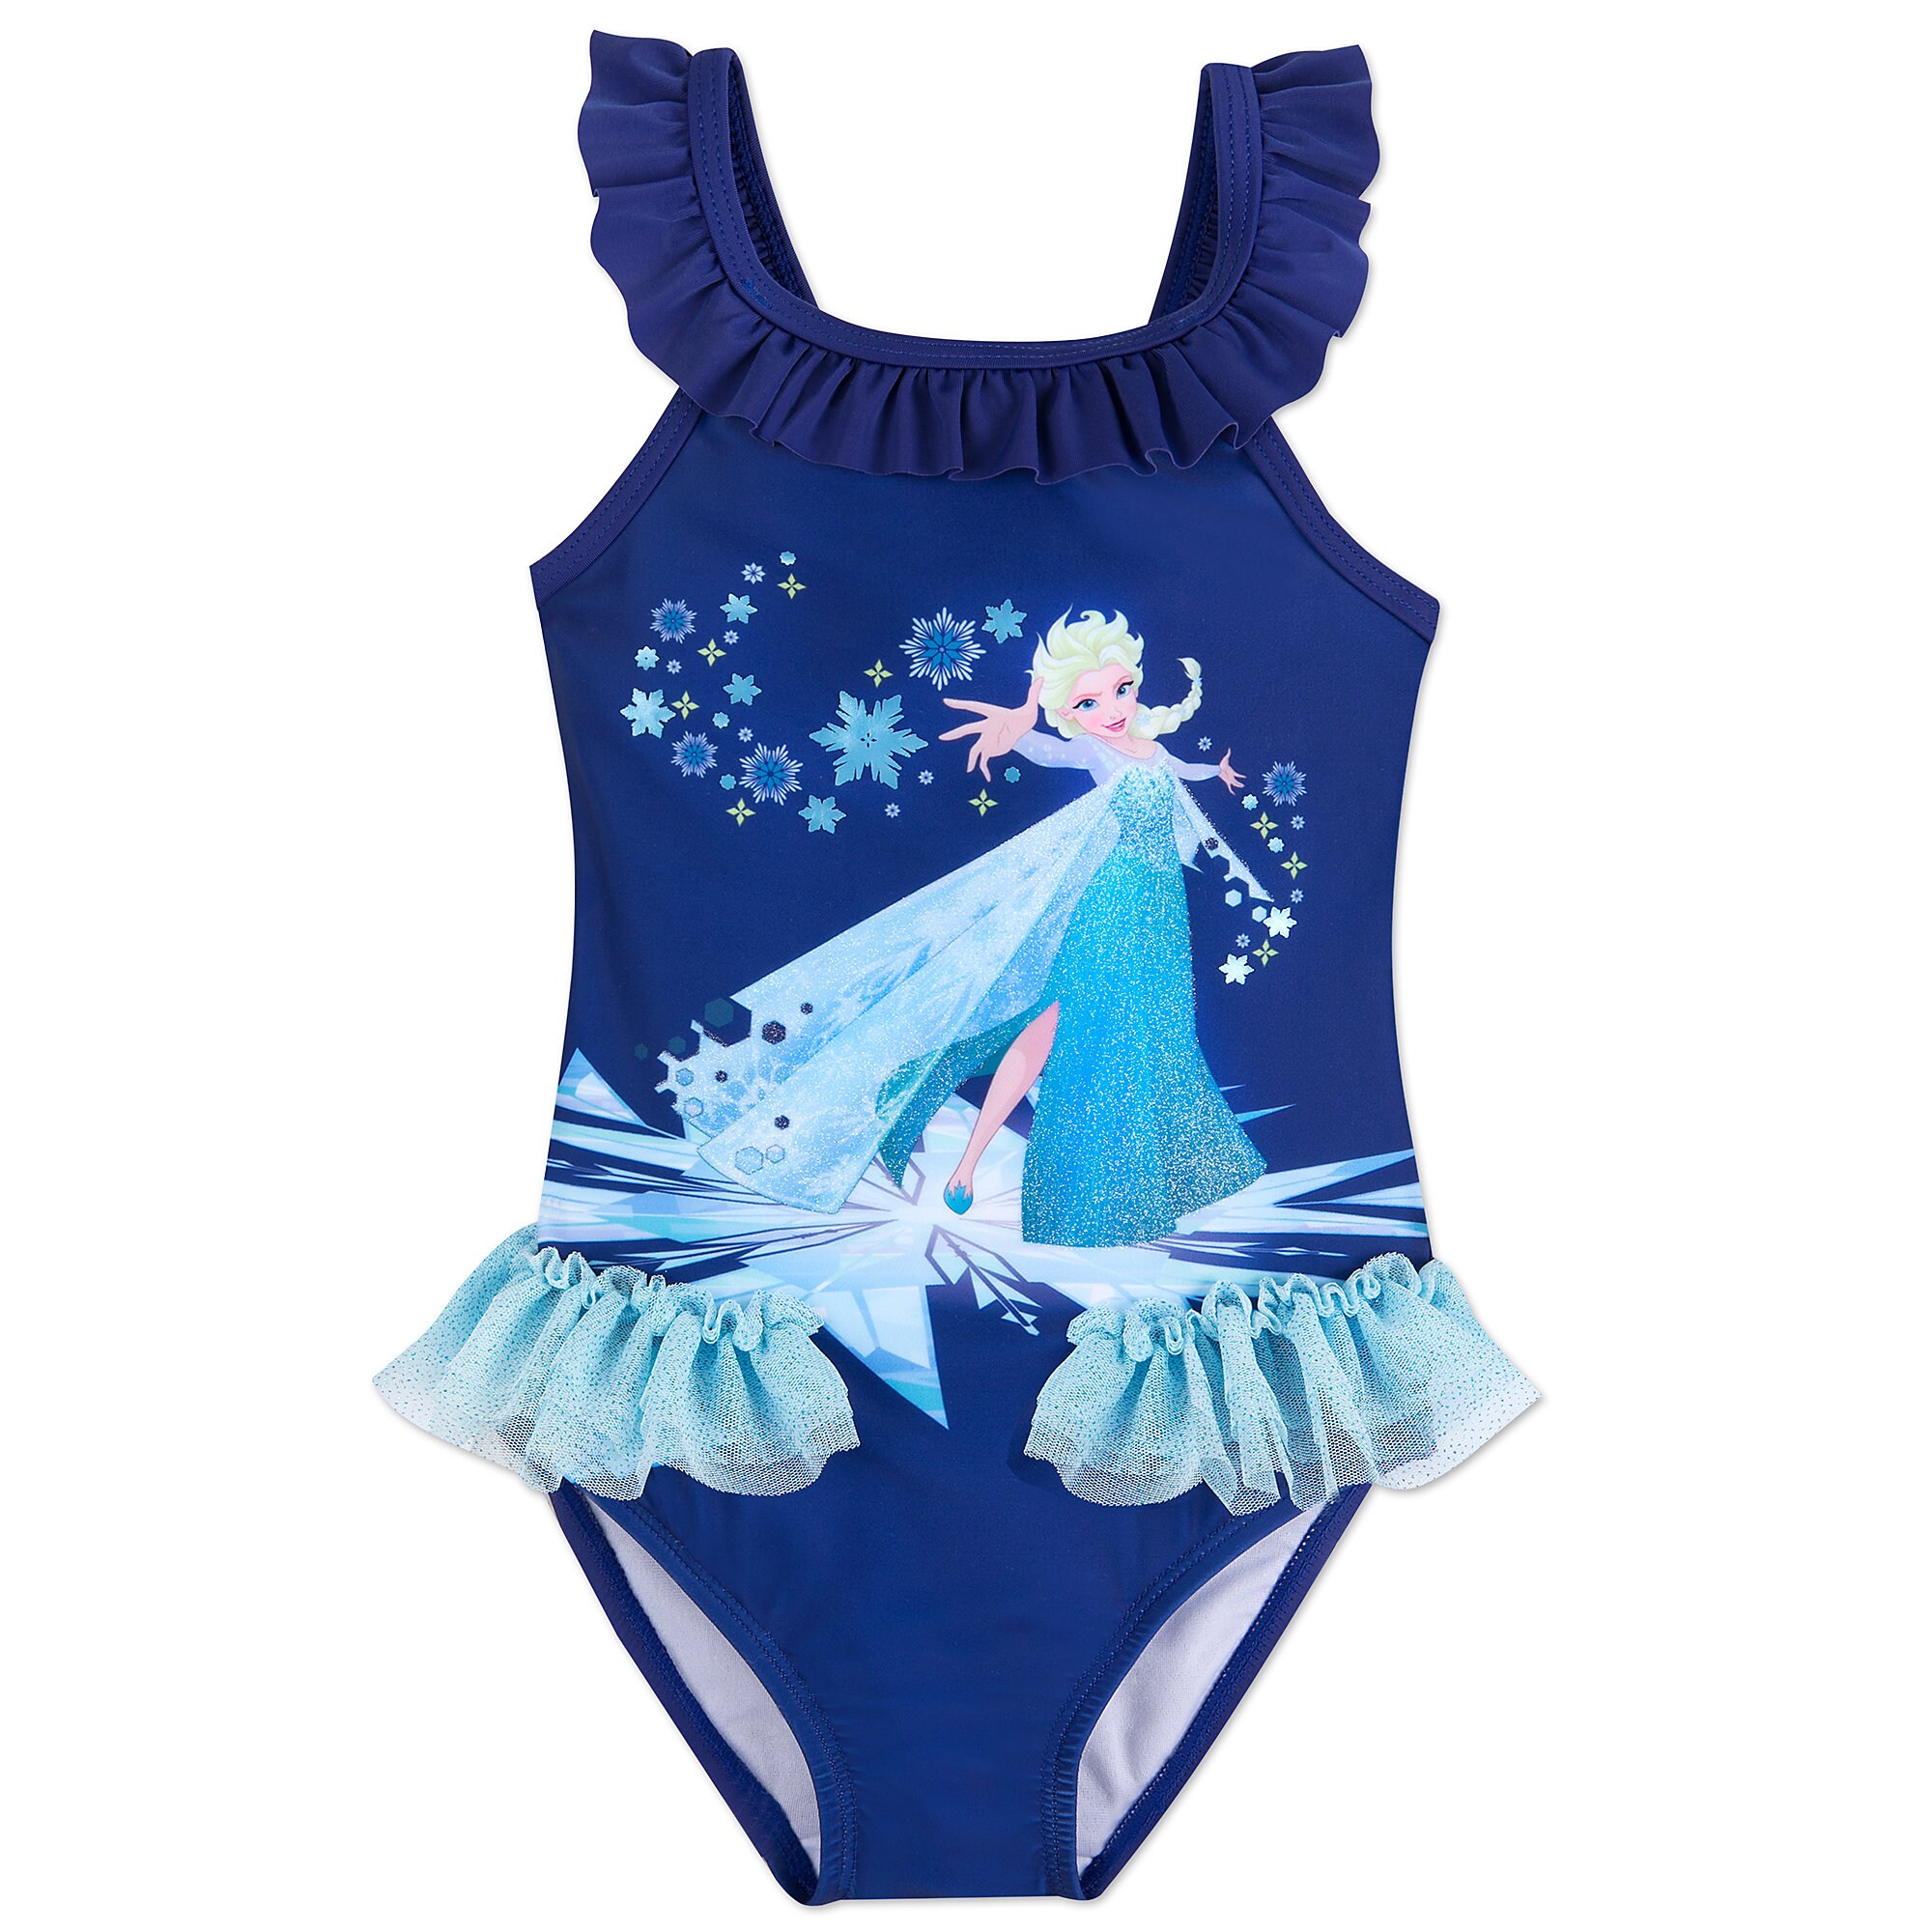 Elsa Swimsuit for Kids - Frozen